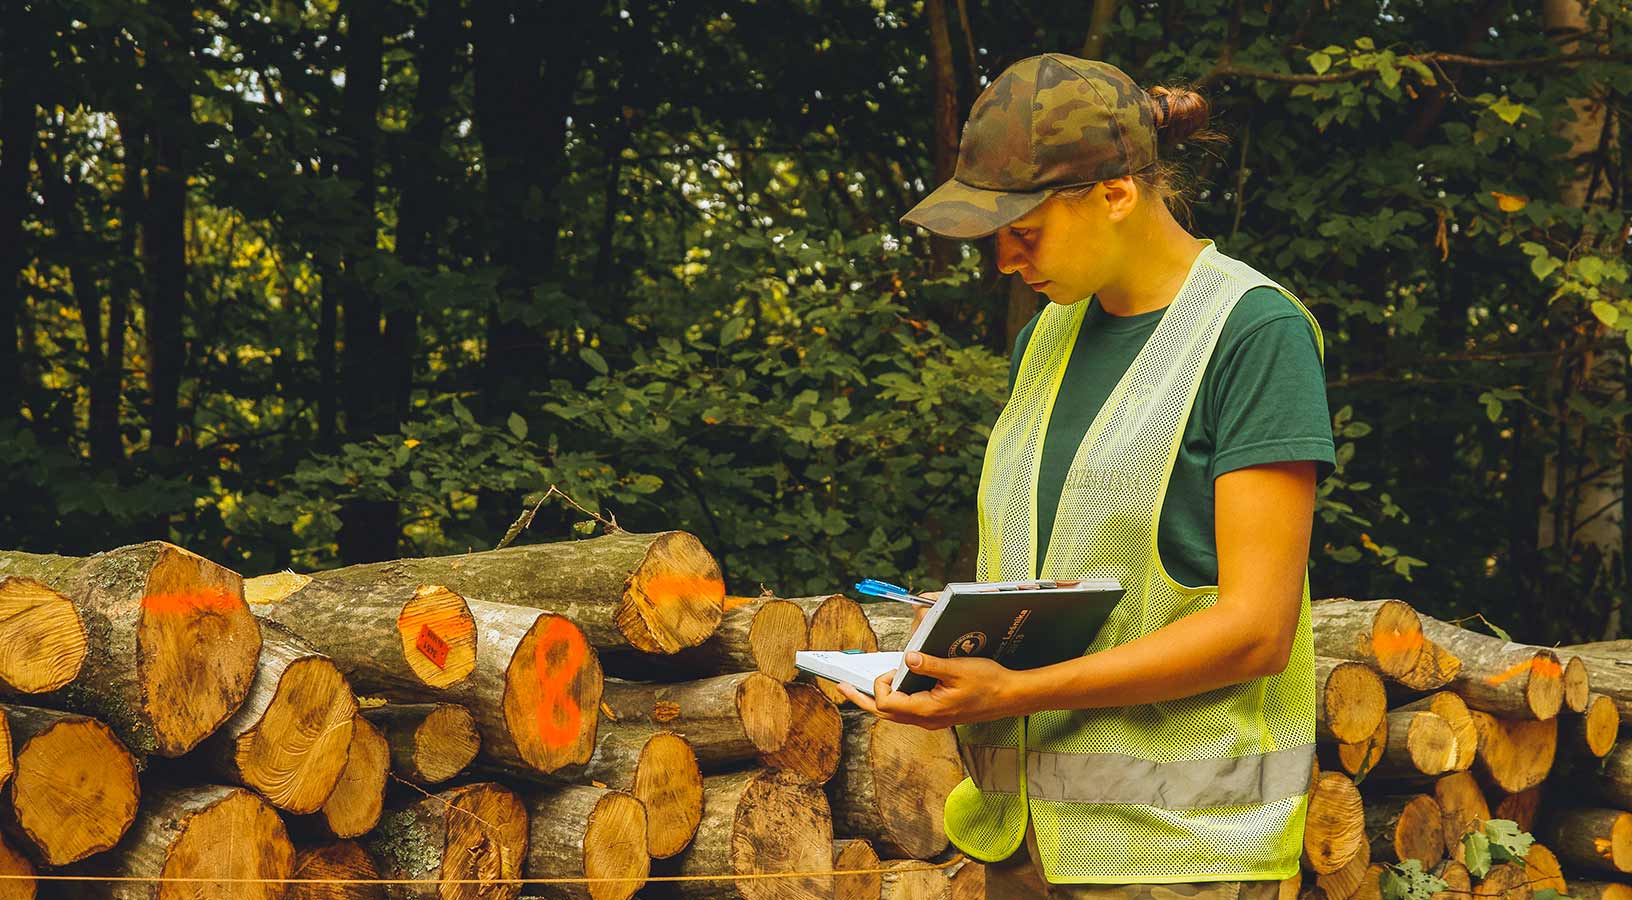 Forestale al lavoro nei pressi di un bosco mentre controlla del legname 